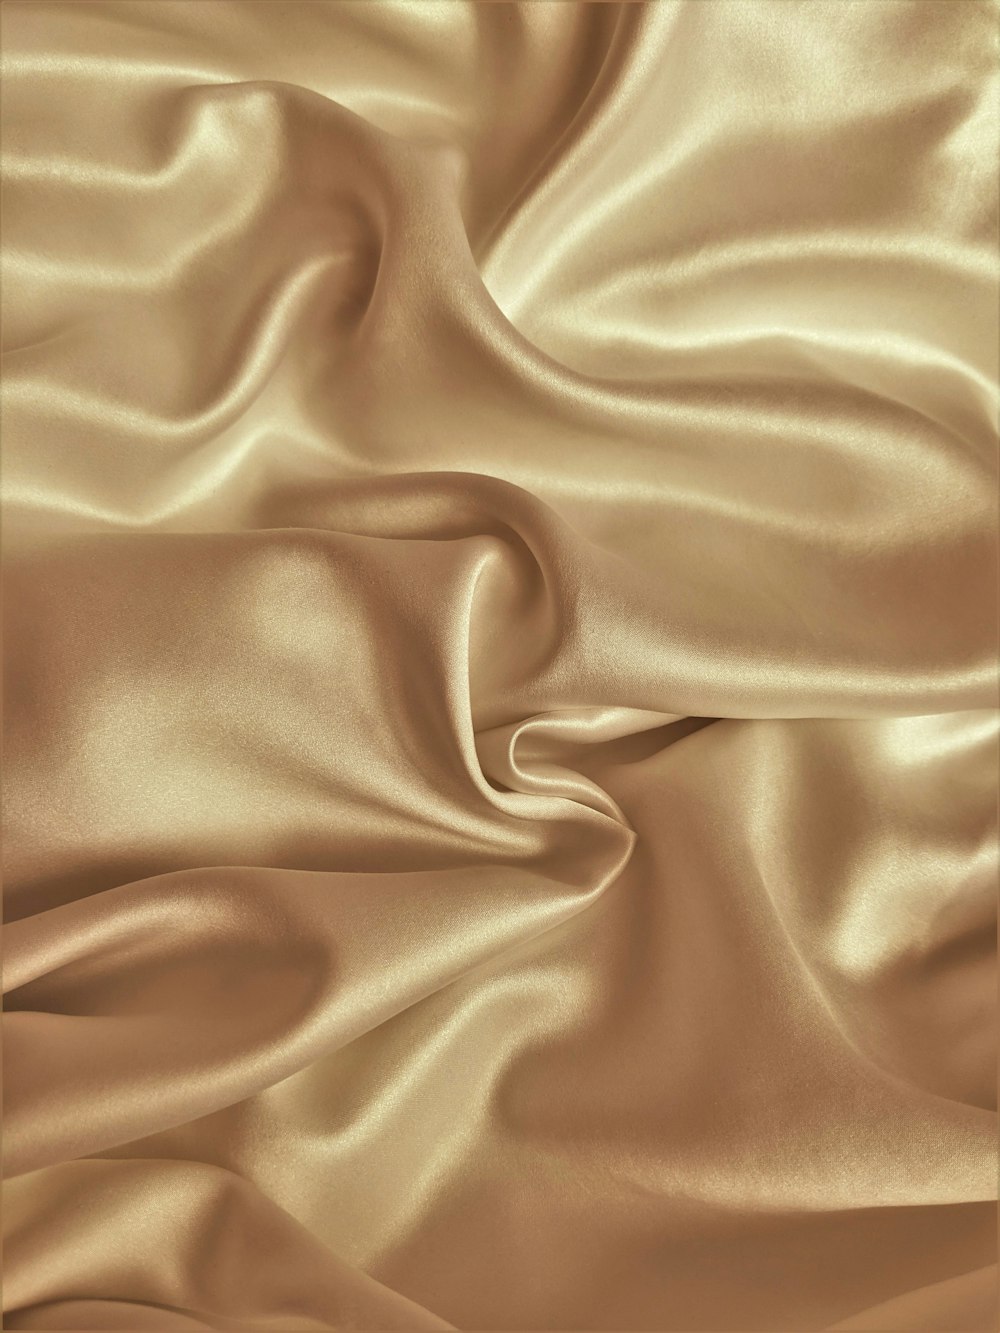 textil marrón en la fotografía de primer plano